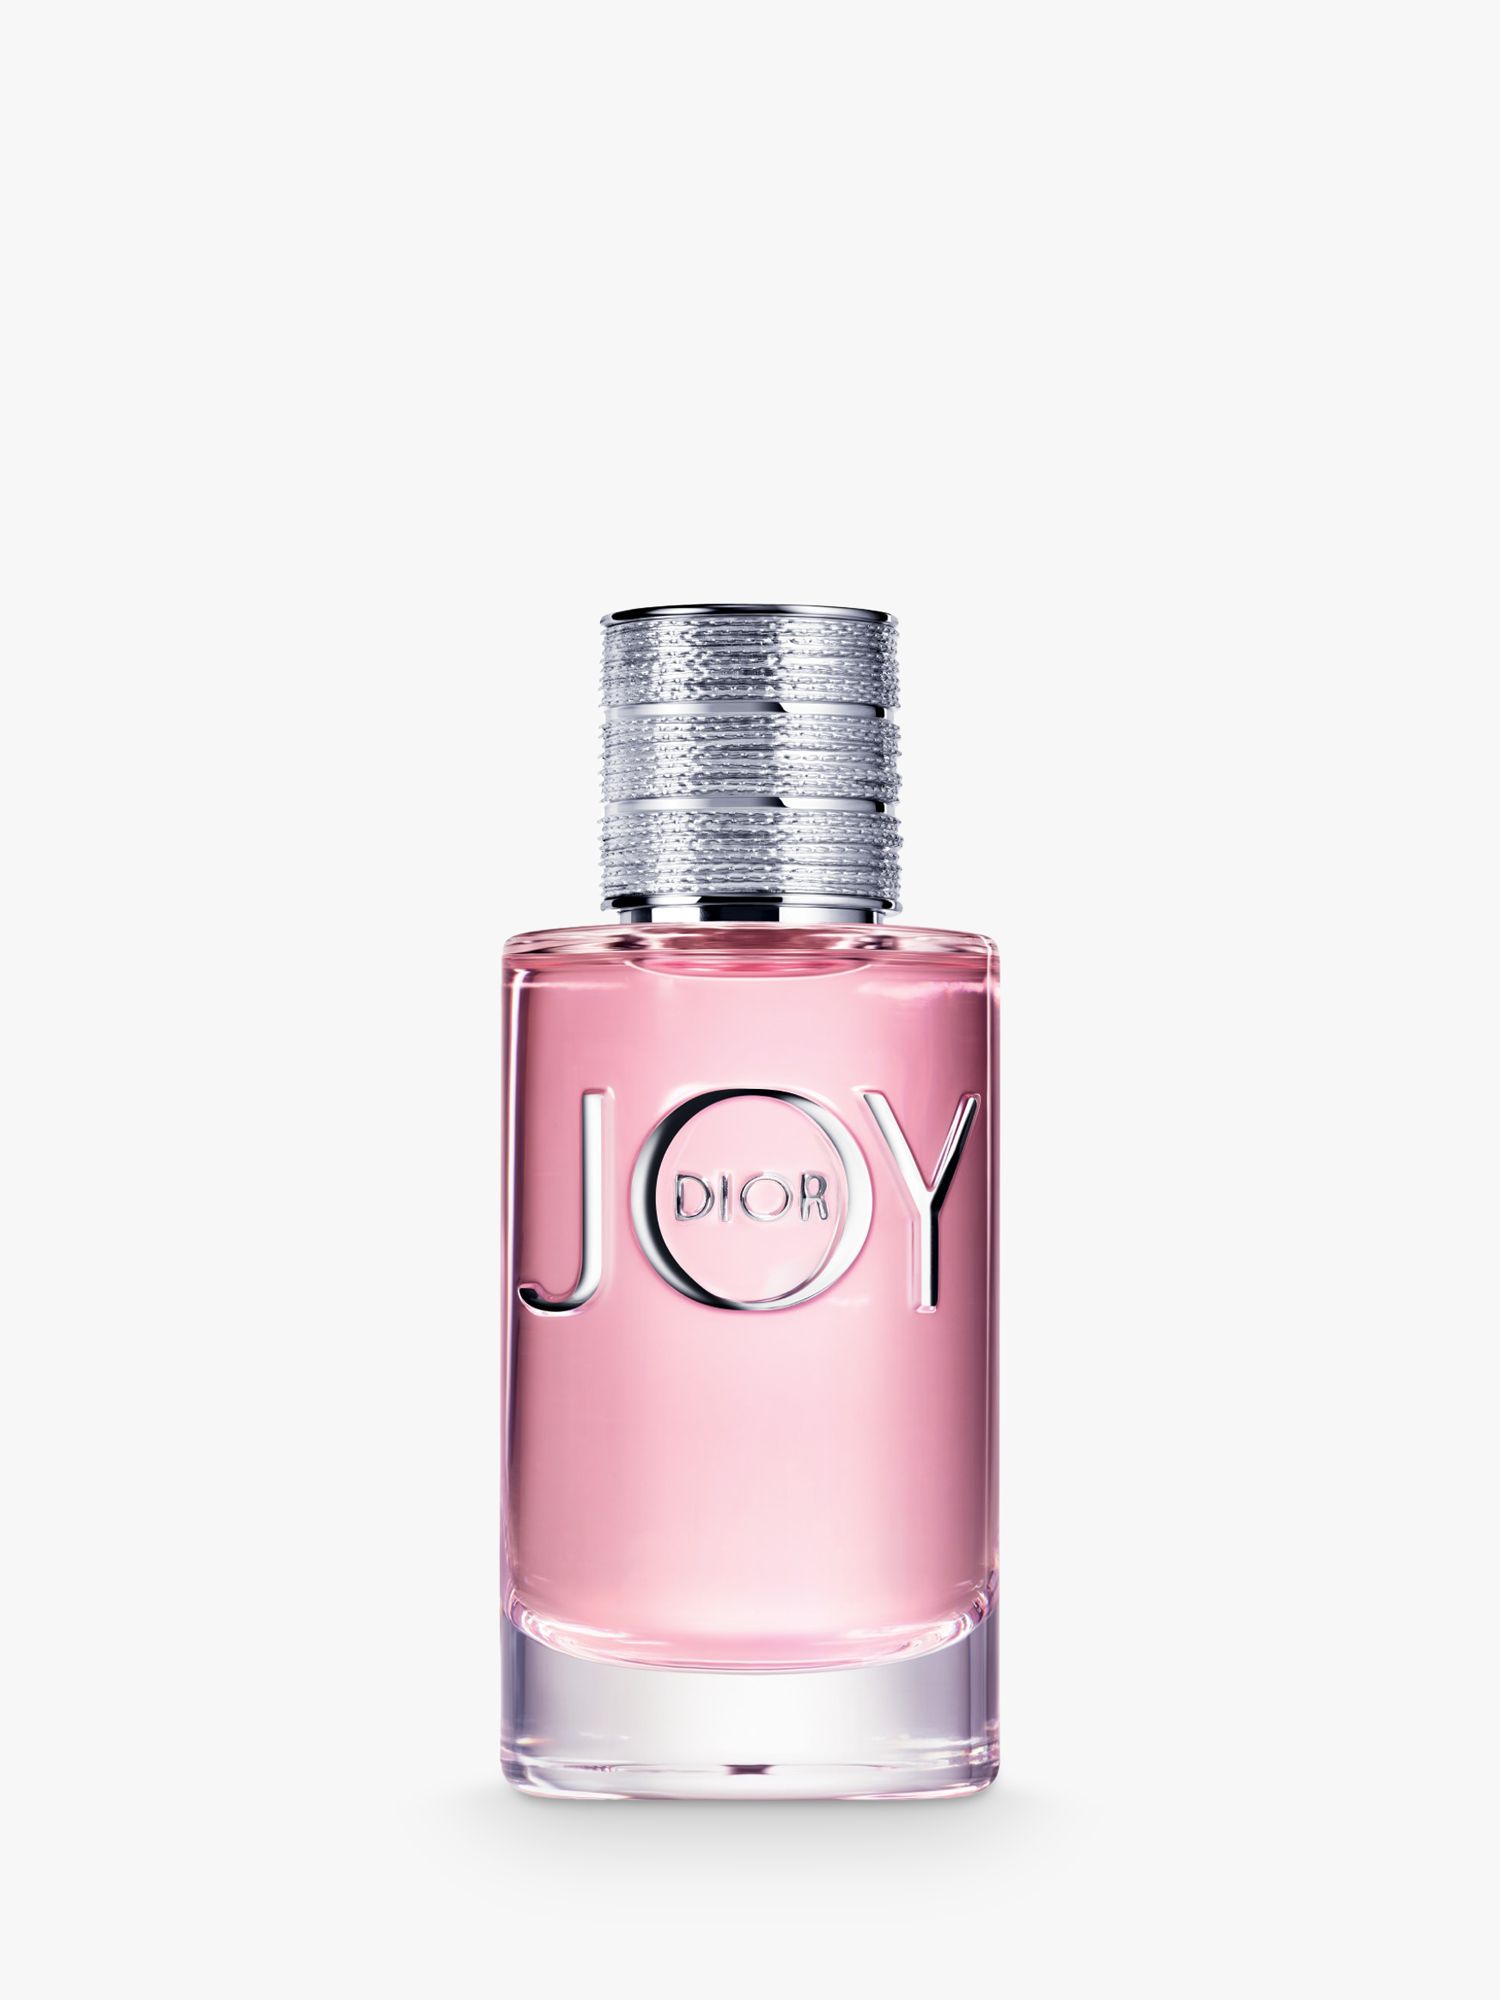 JOY by Dior Eau de Parfum at John Lewis 